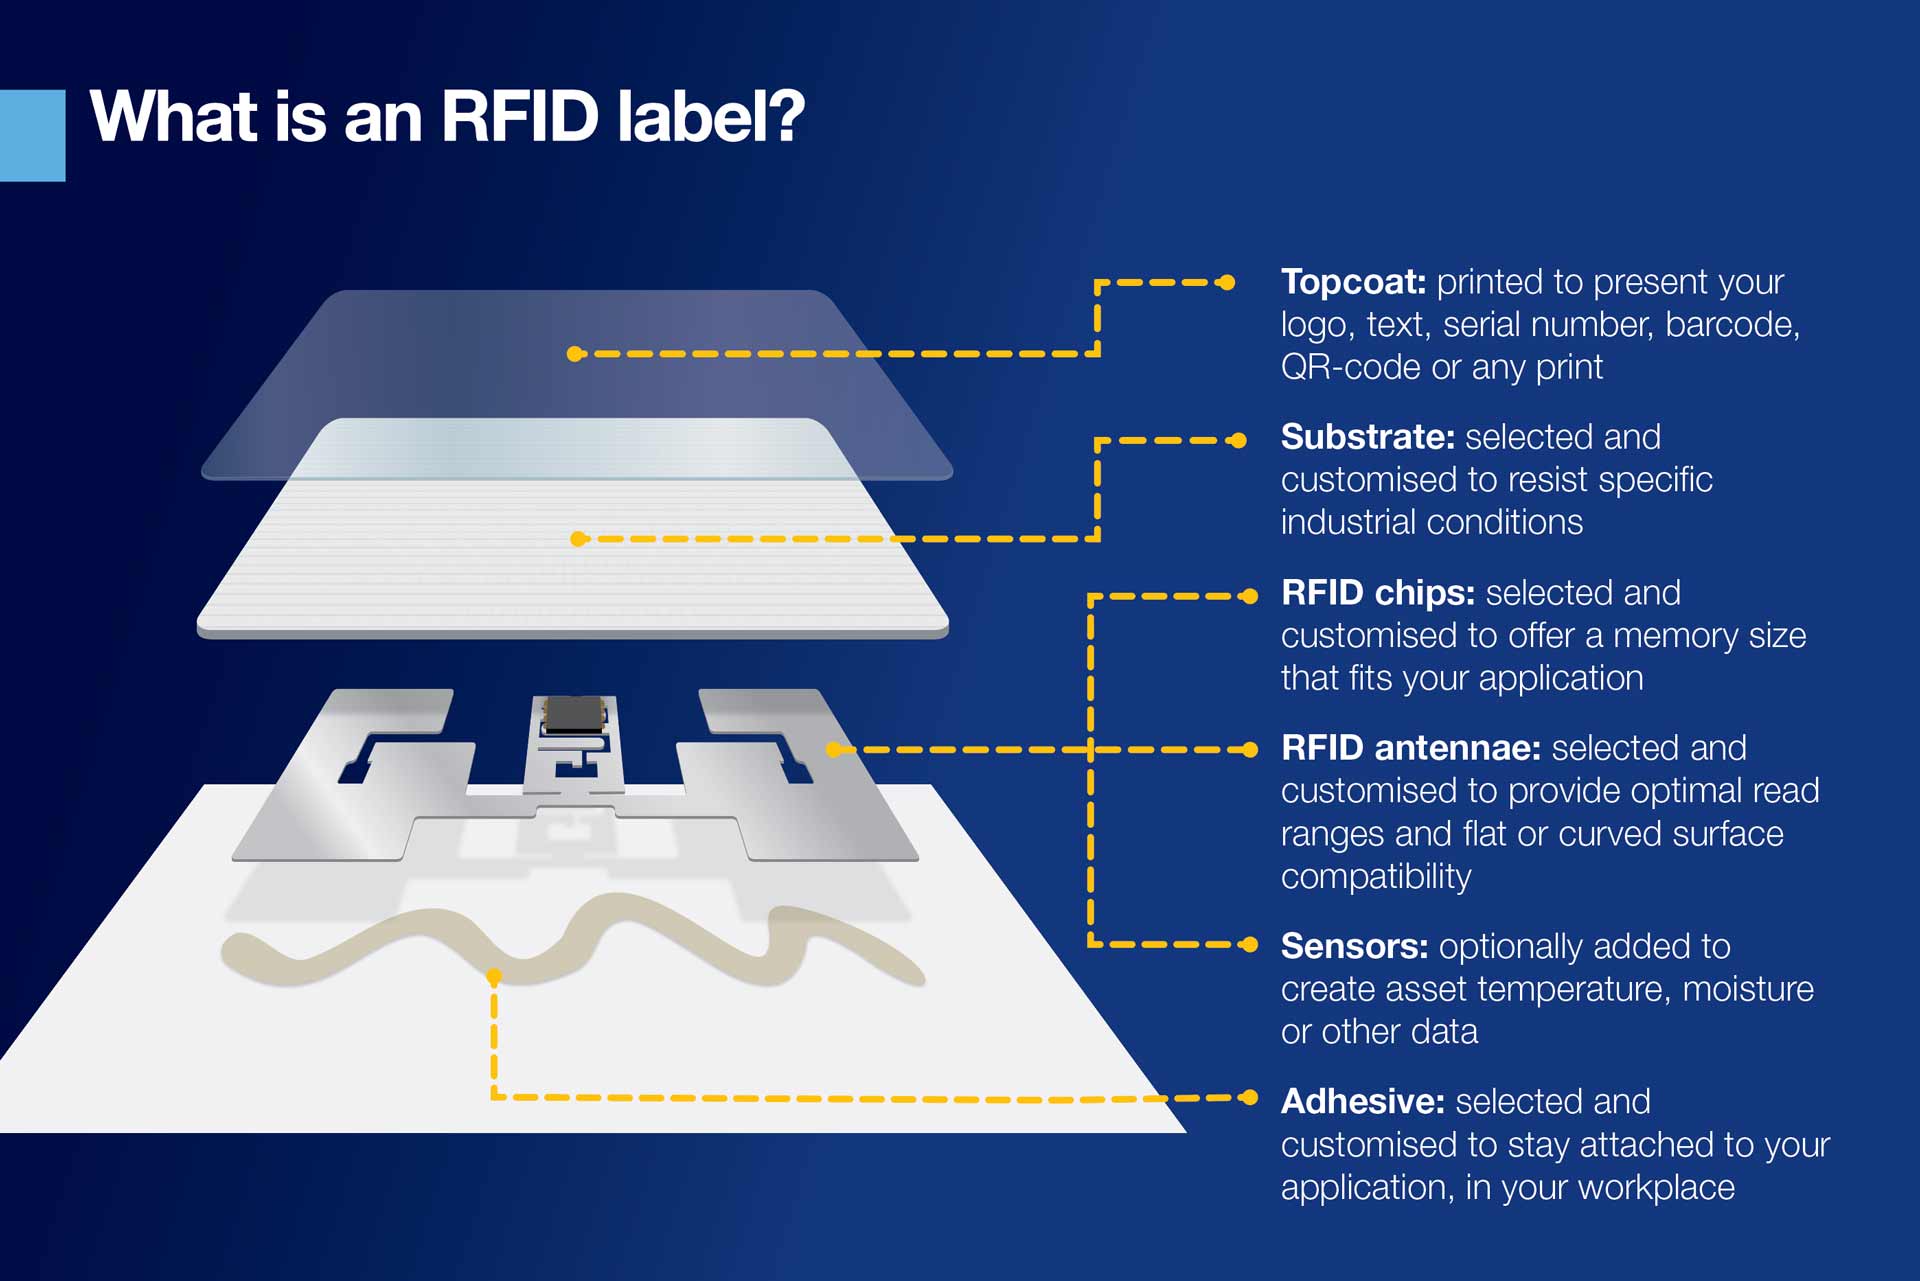 Infografica che spiega cos’è un’etichetta RFID. Il contenuto della grafica è trattato anche nell’articolo principale del blog.